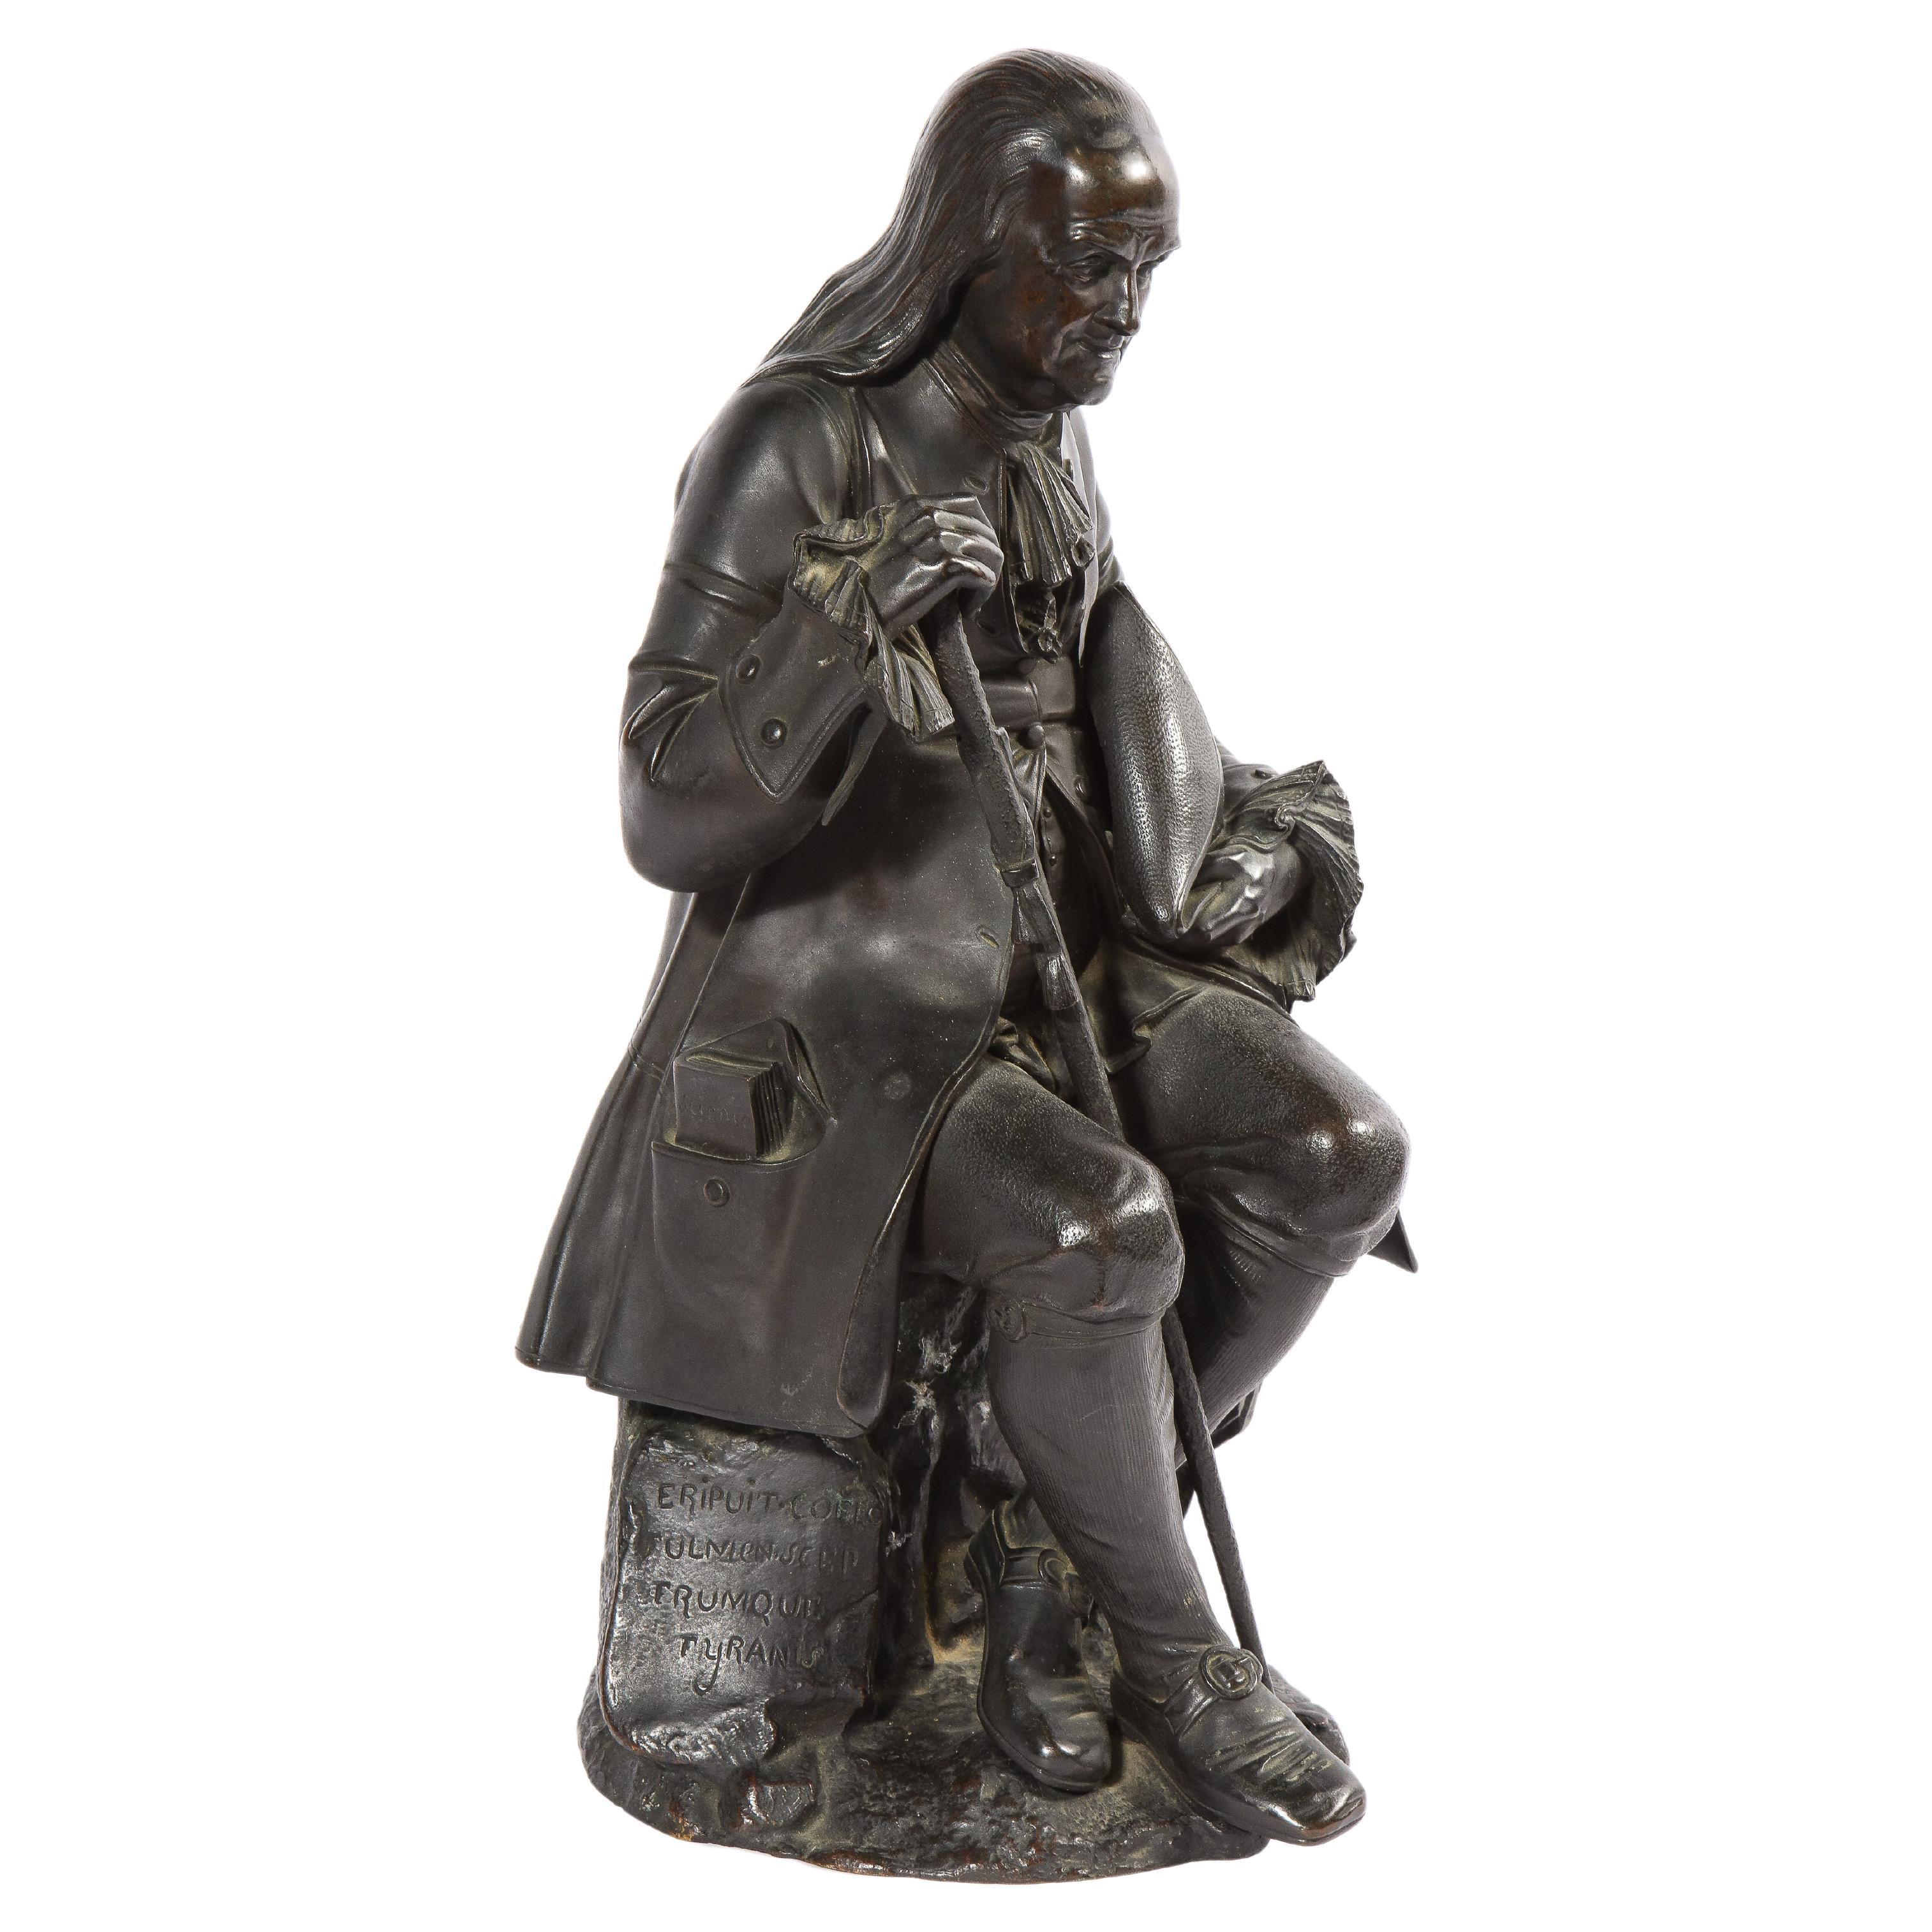 Albert-Ernest Carrier-Belleuse (France, 1824-1887)

Rare statue en bronze de Benjamin Franklin assis, tenant sa canne et son chapeau, avec un livre dans la poche droite de sa veste portant l'inscription 